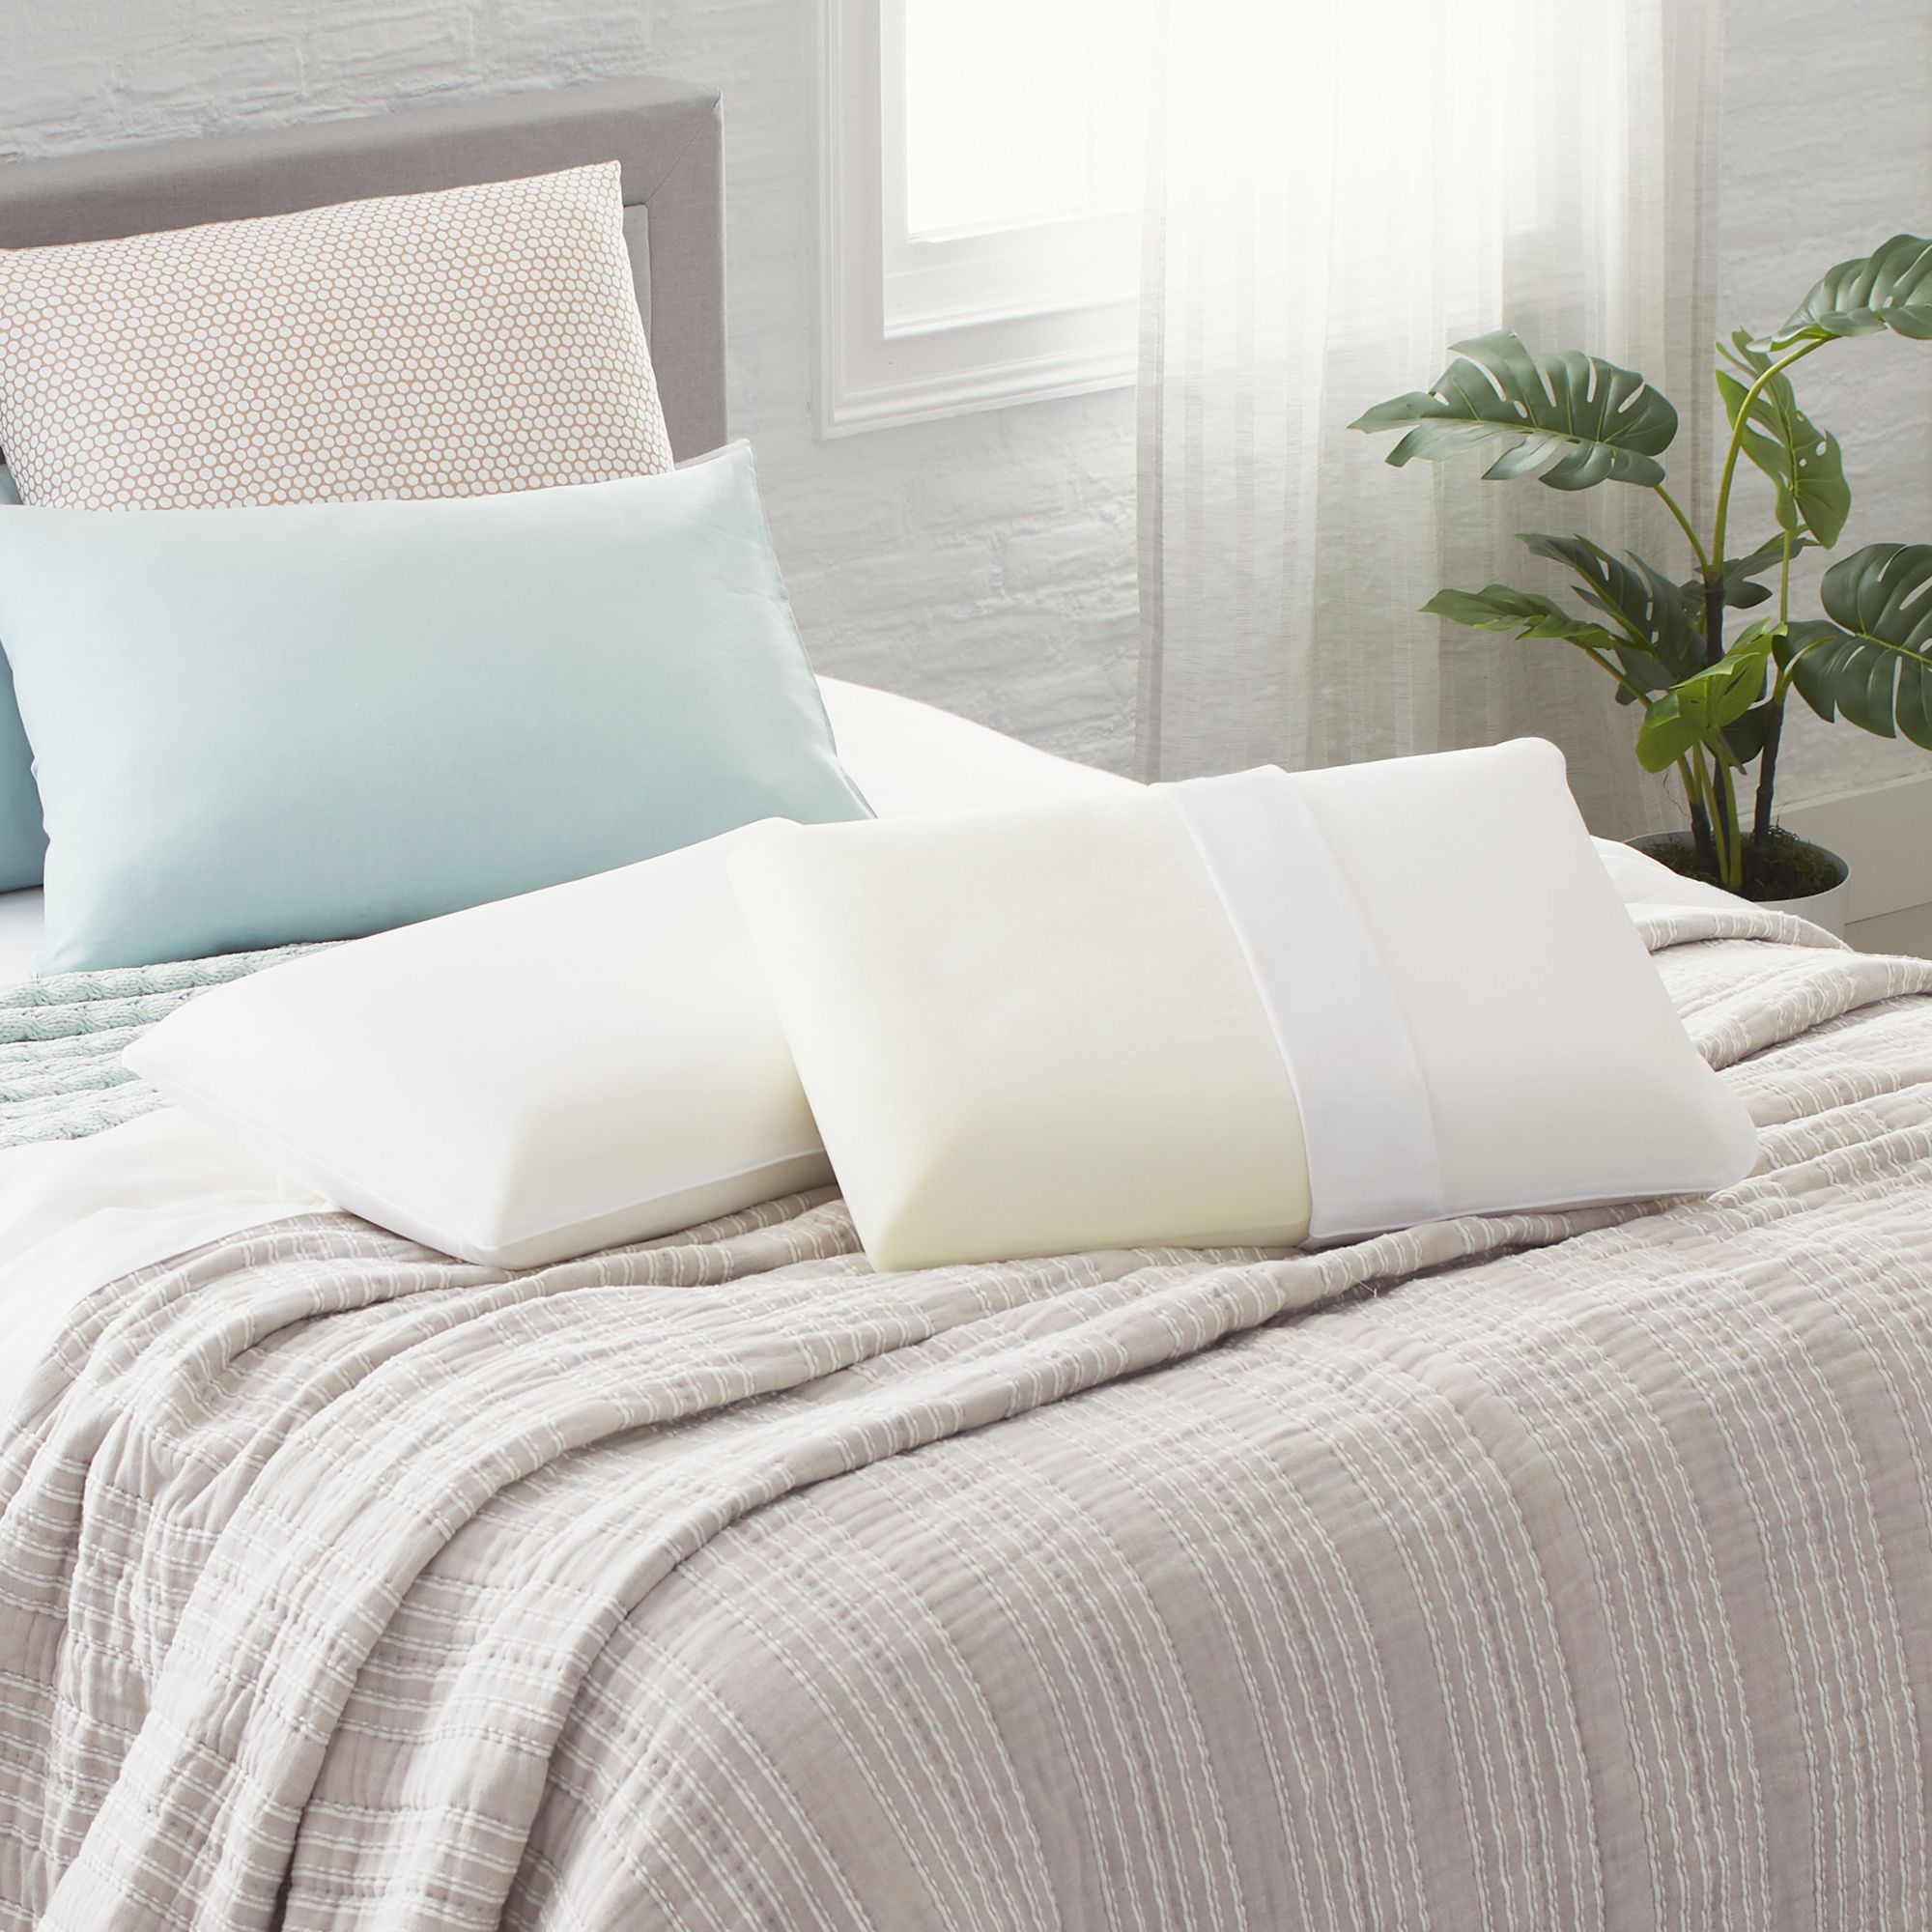 Fingerhut - Comfort Revolution Memory Foam Pillow Pair - Standard